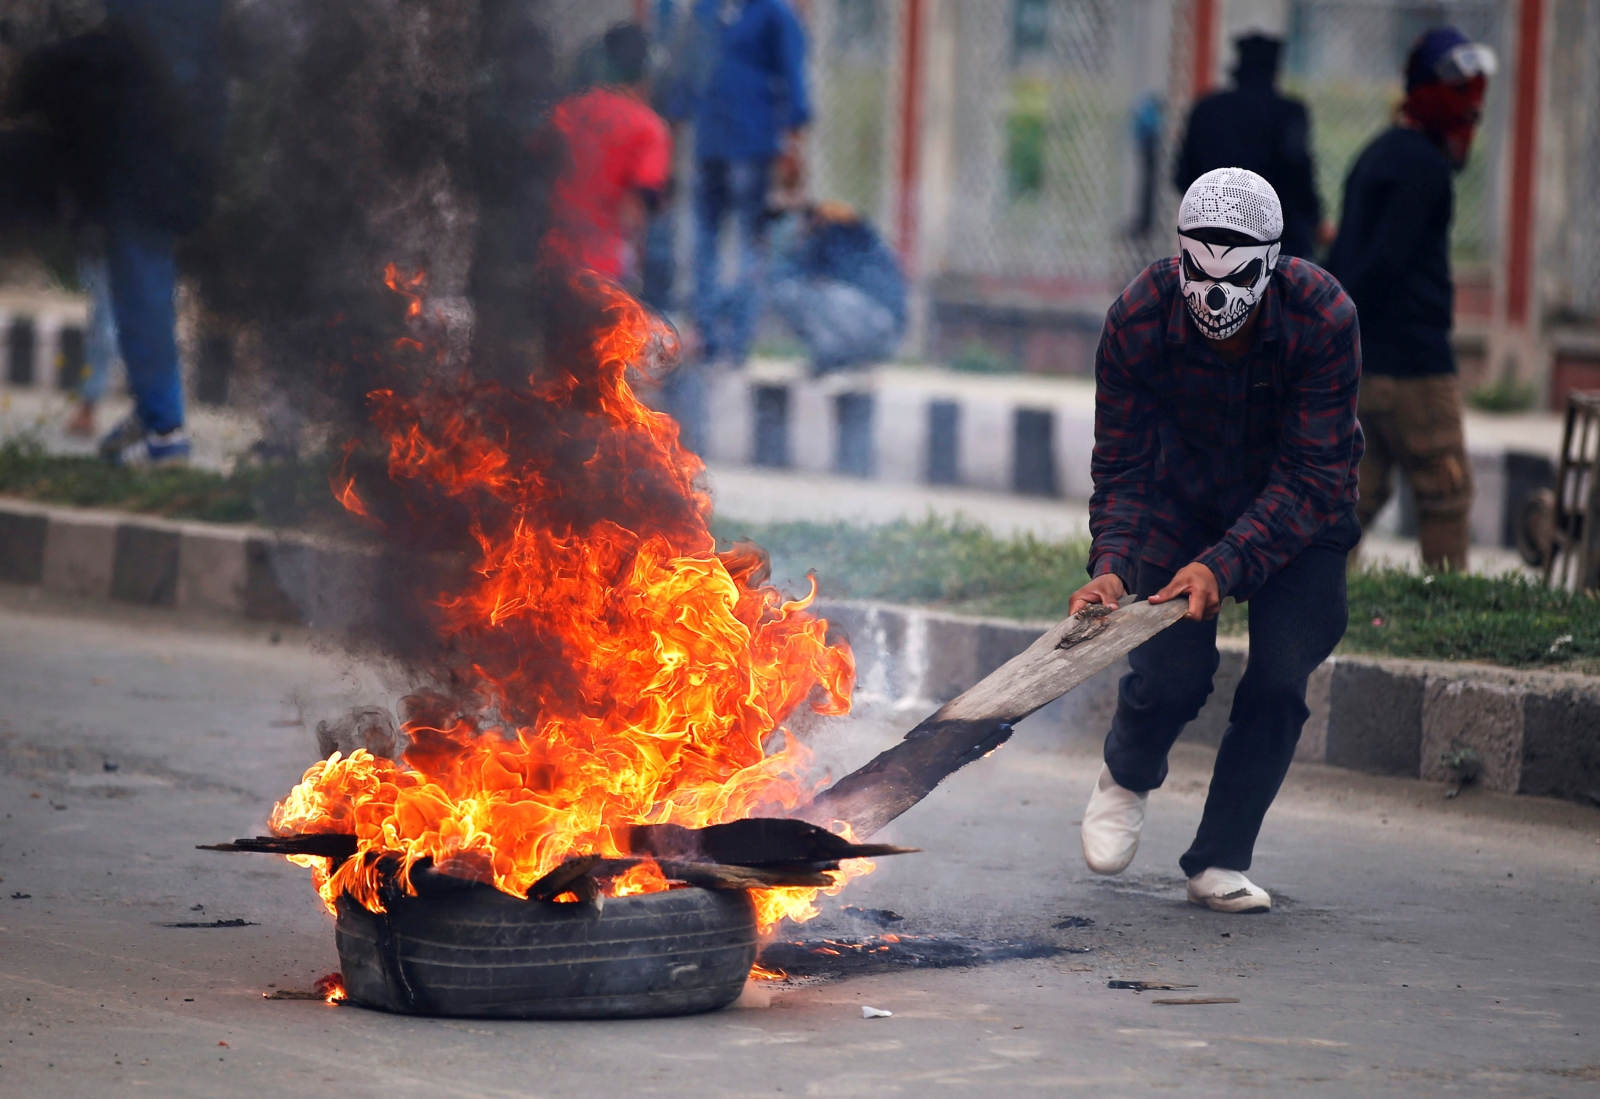 Kashmir violence